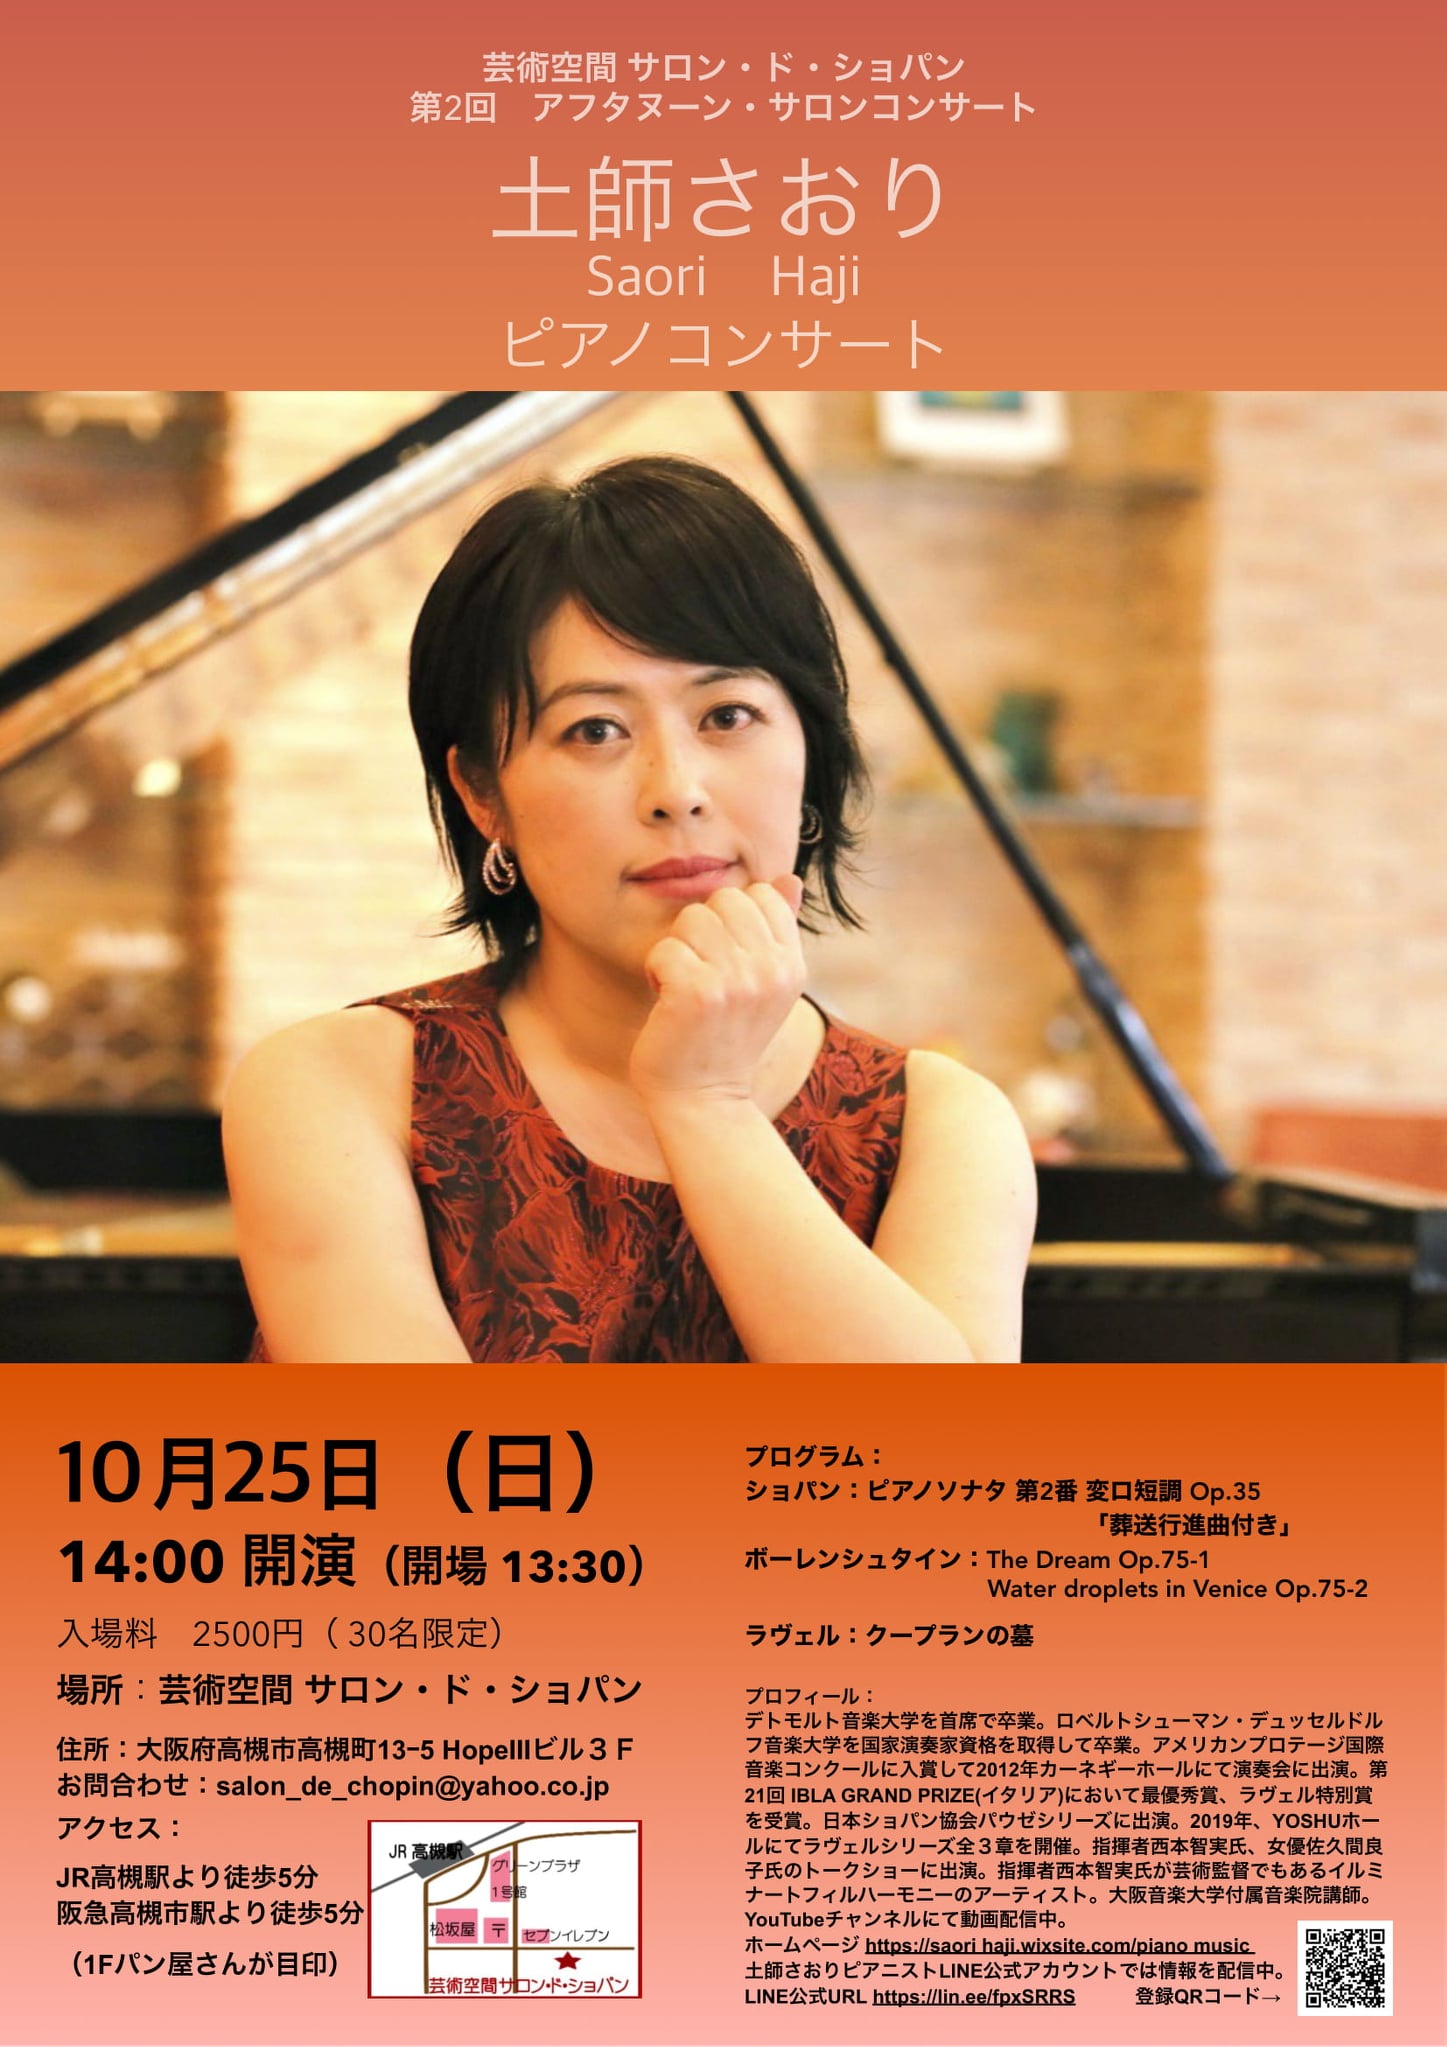 土師さおり Haji Saori ピアノコンサート 